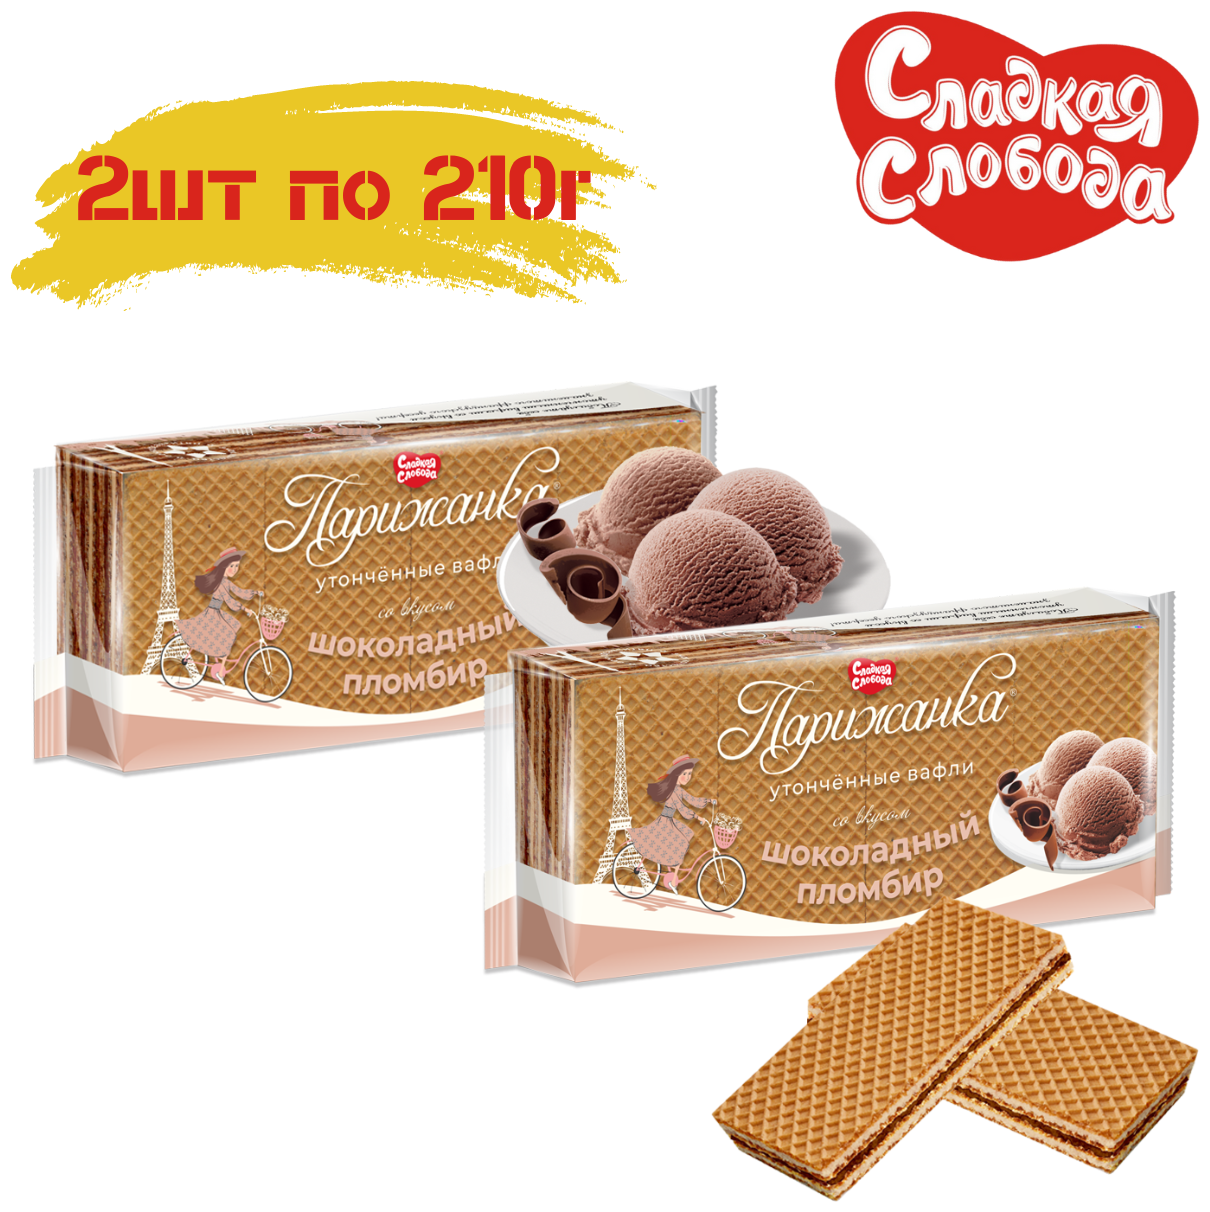 Вафли  парижанка  Шоколадный пломбир 2 штуки по 210 грамм / разрешено для питания детей с 3х лет / Сладкая слобода